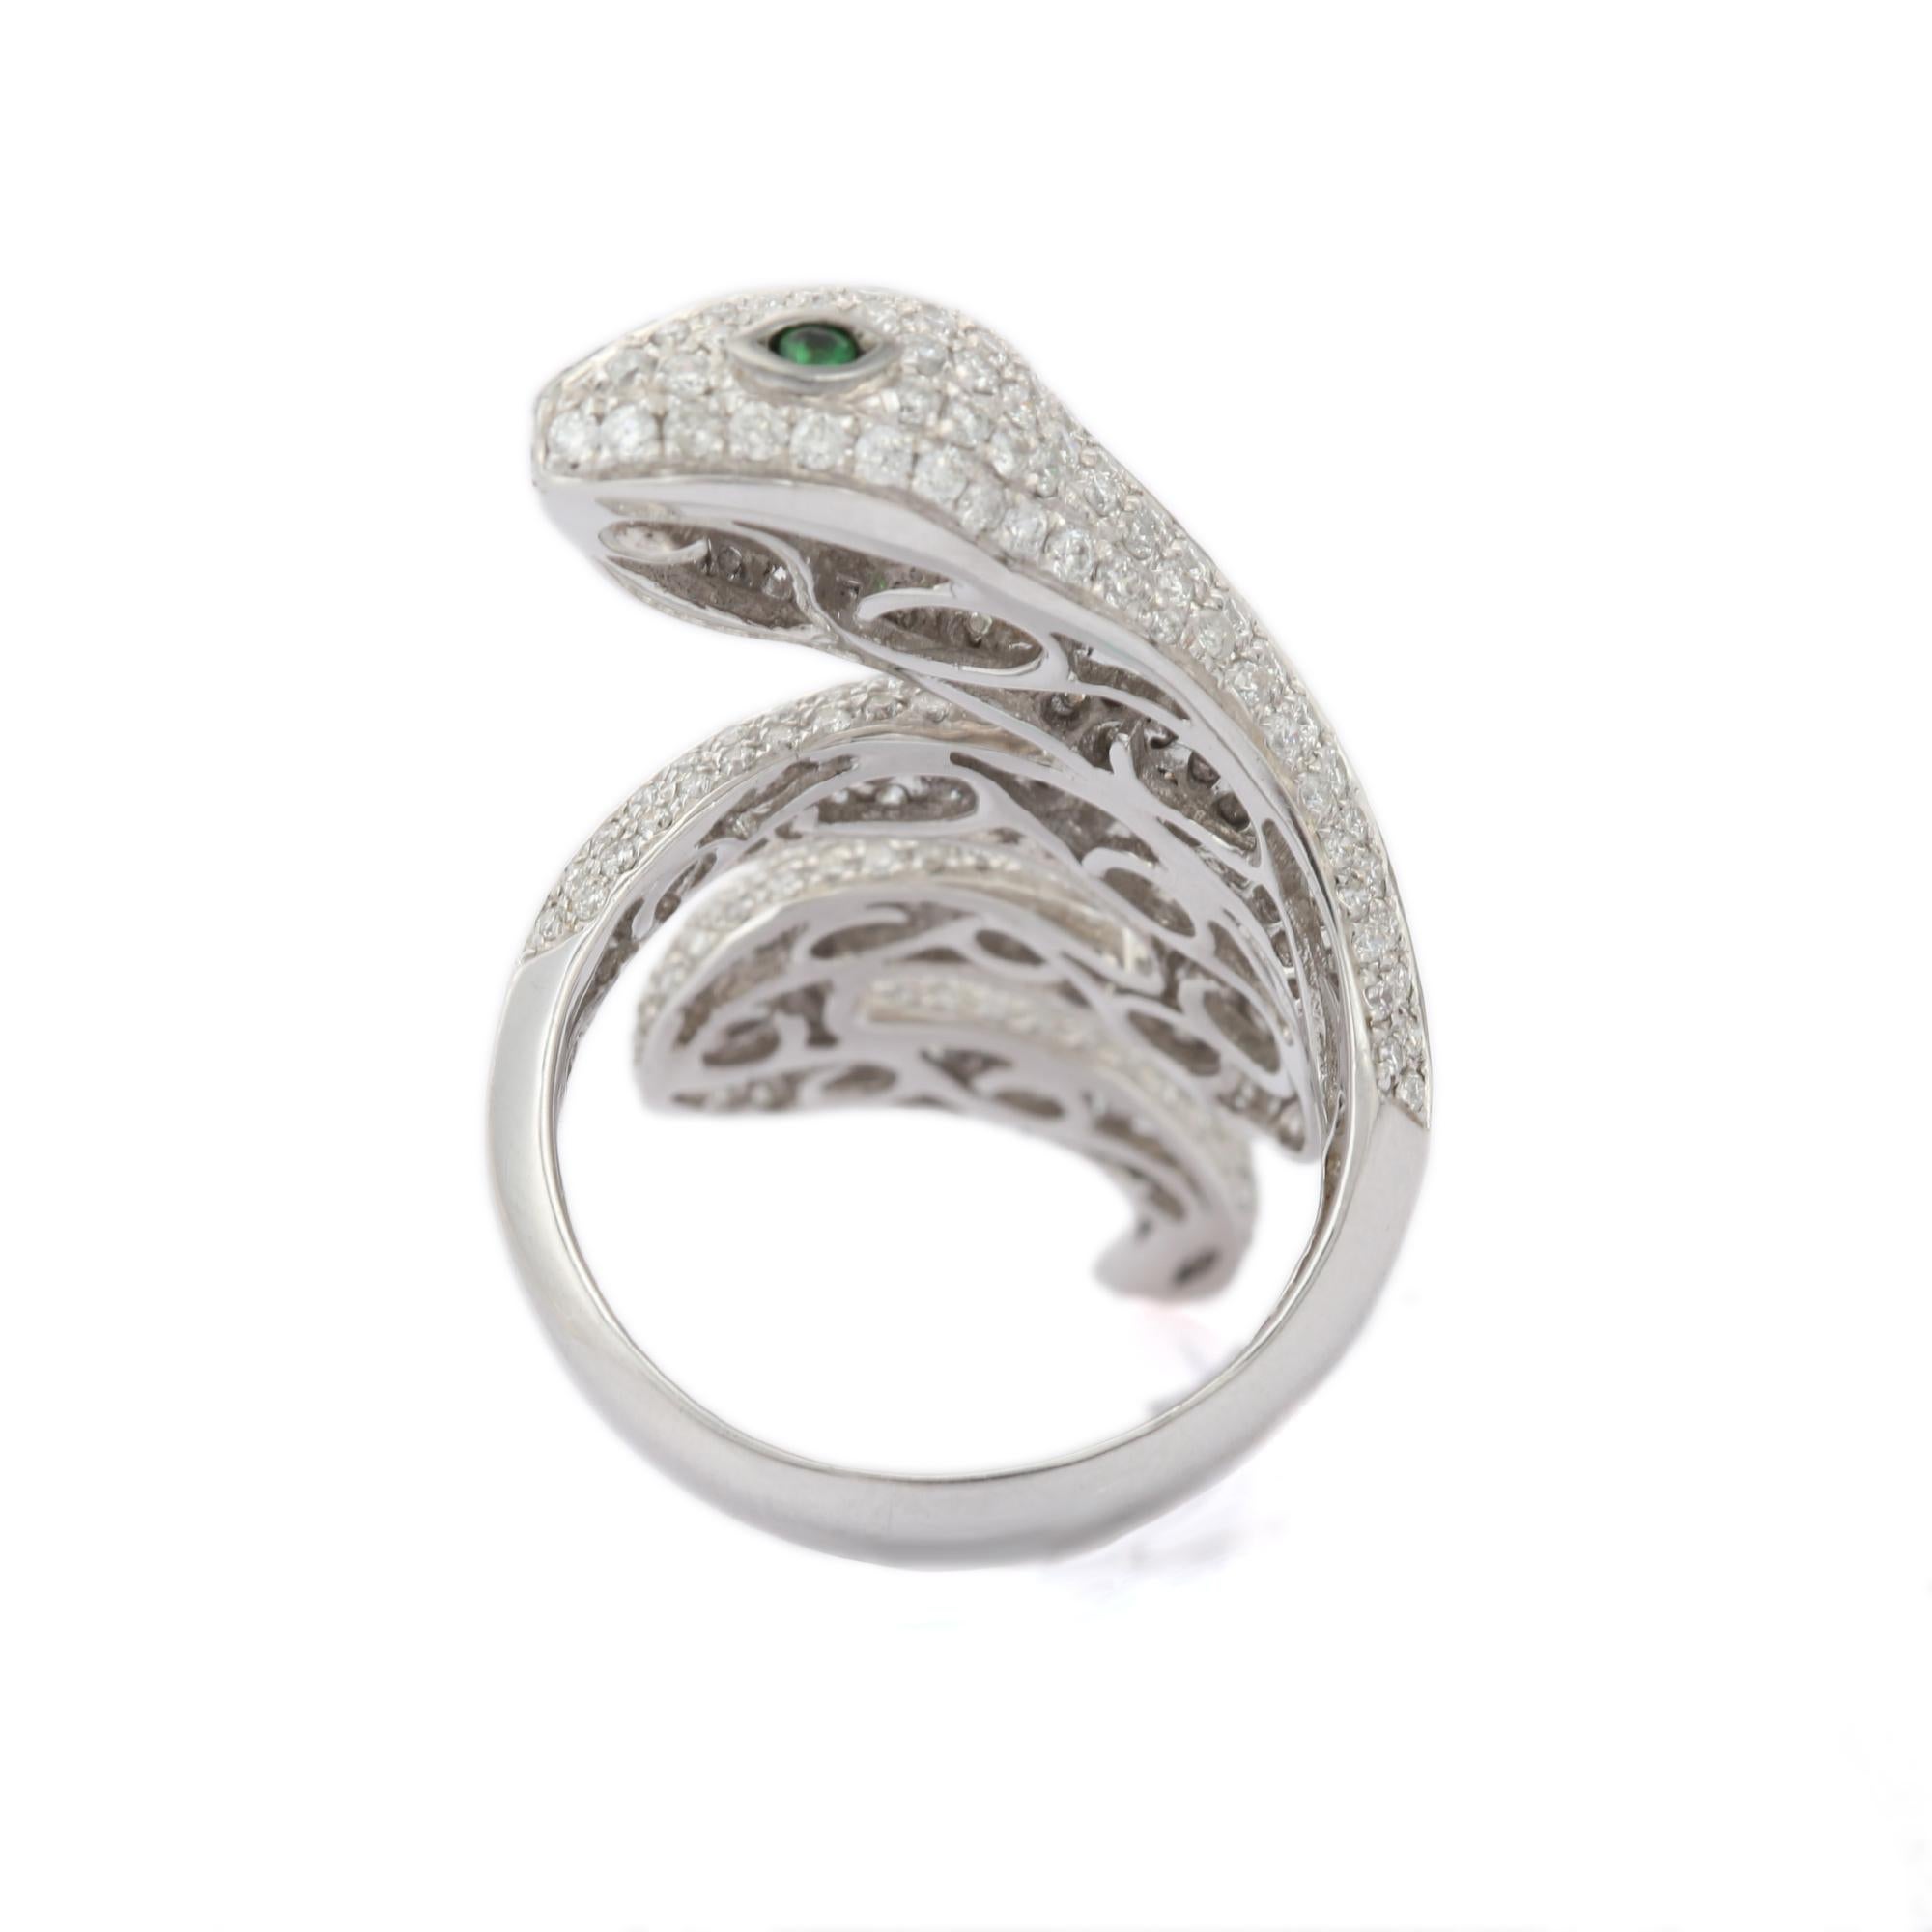 For Sale:  Tsavorite Eye and Diamond Snake Coil Ring in 18k Solid White Gold 8